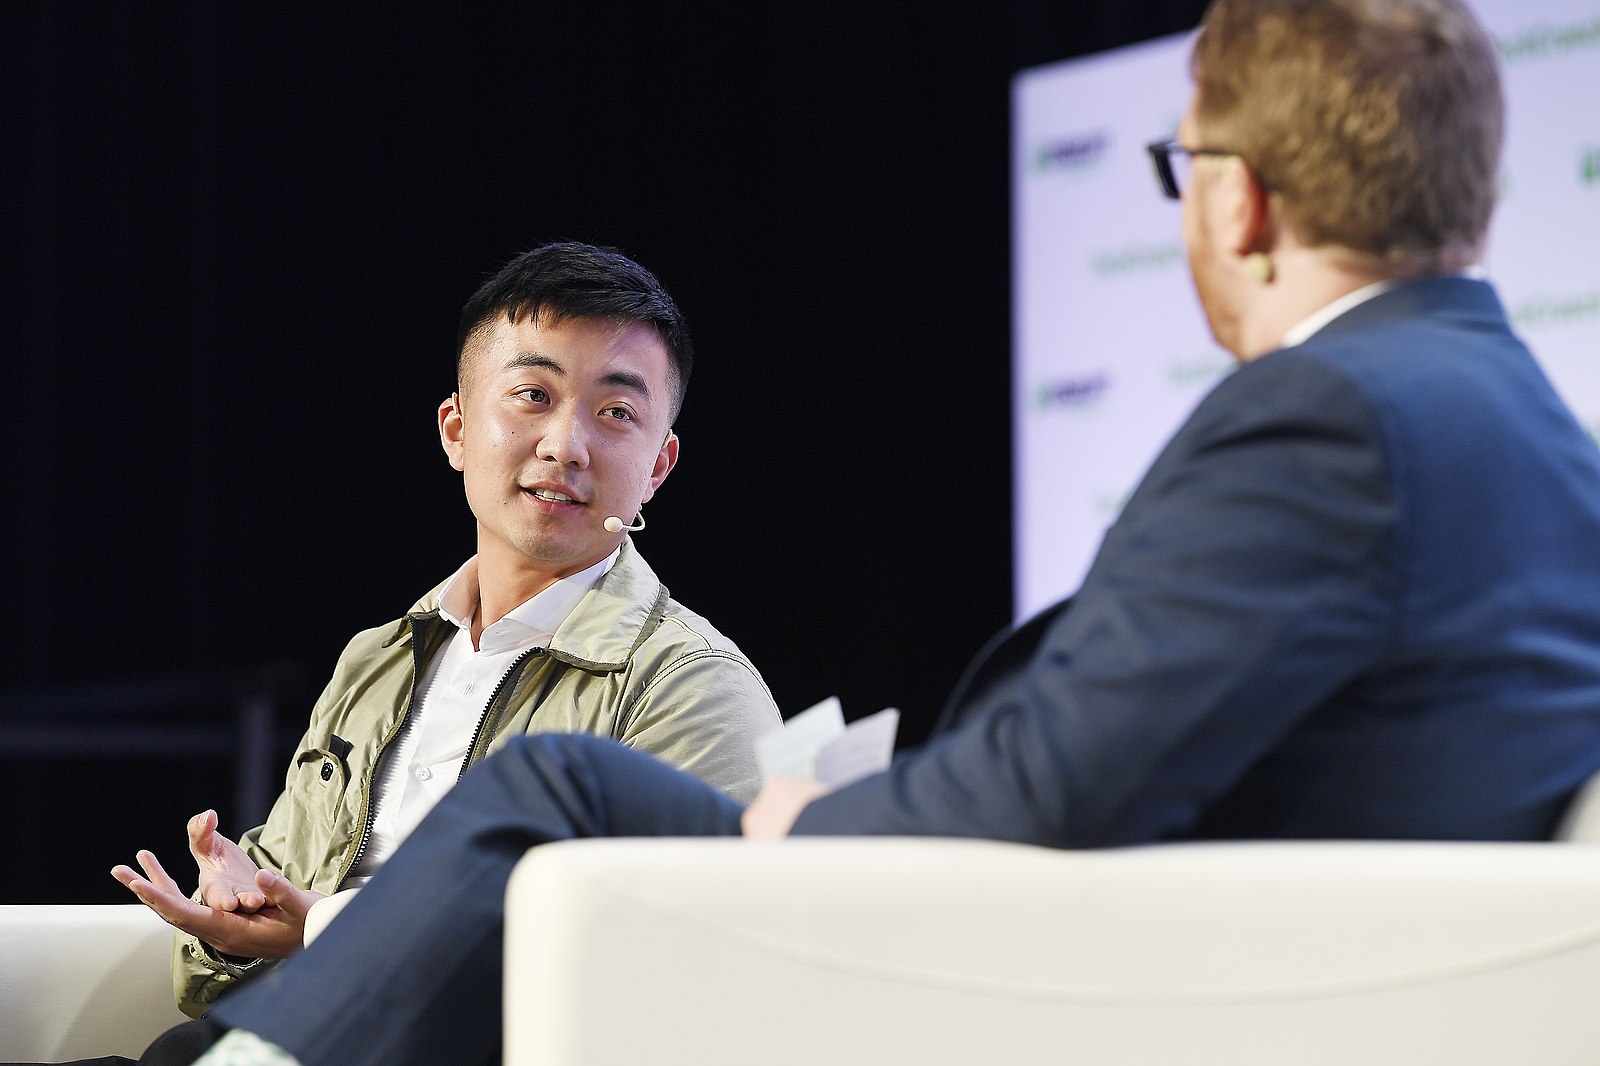 Le cofondateur de OnePlus, Carl Pei, quitte la marque après 7 ans